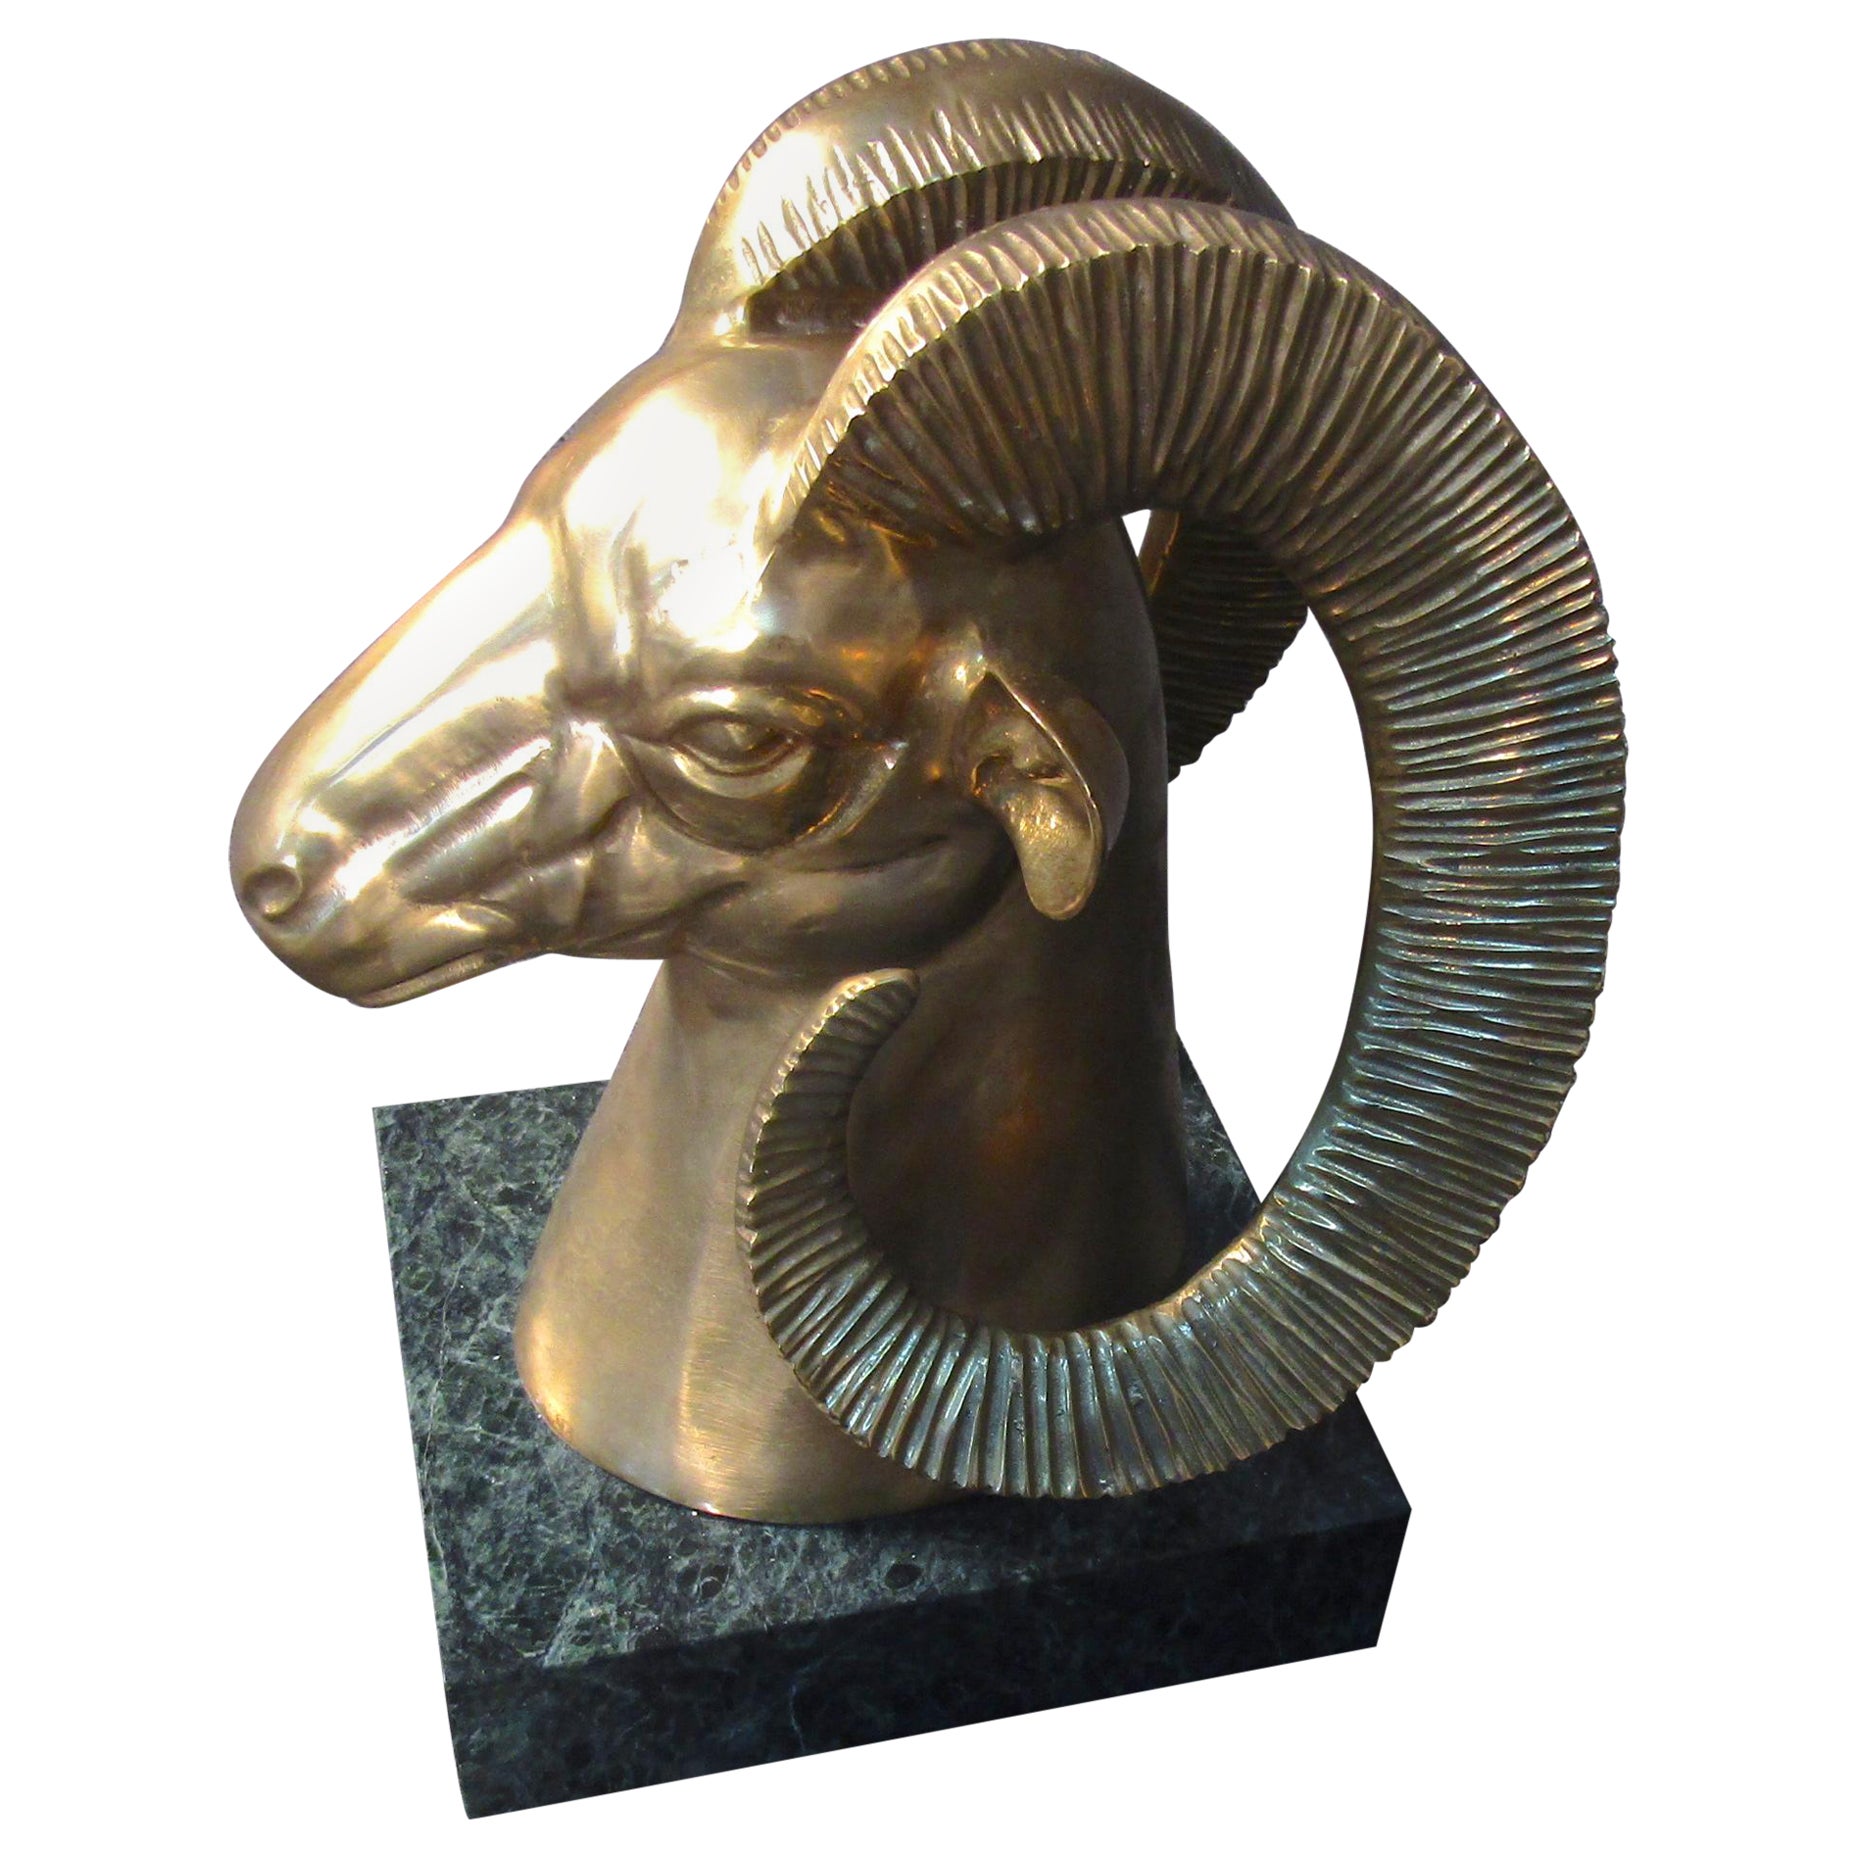 Unique Golden Goats Head Sculpture on Marble Base